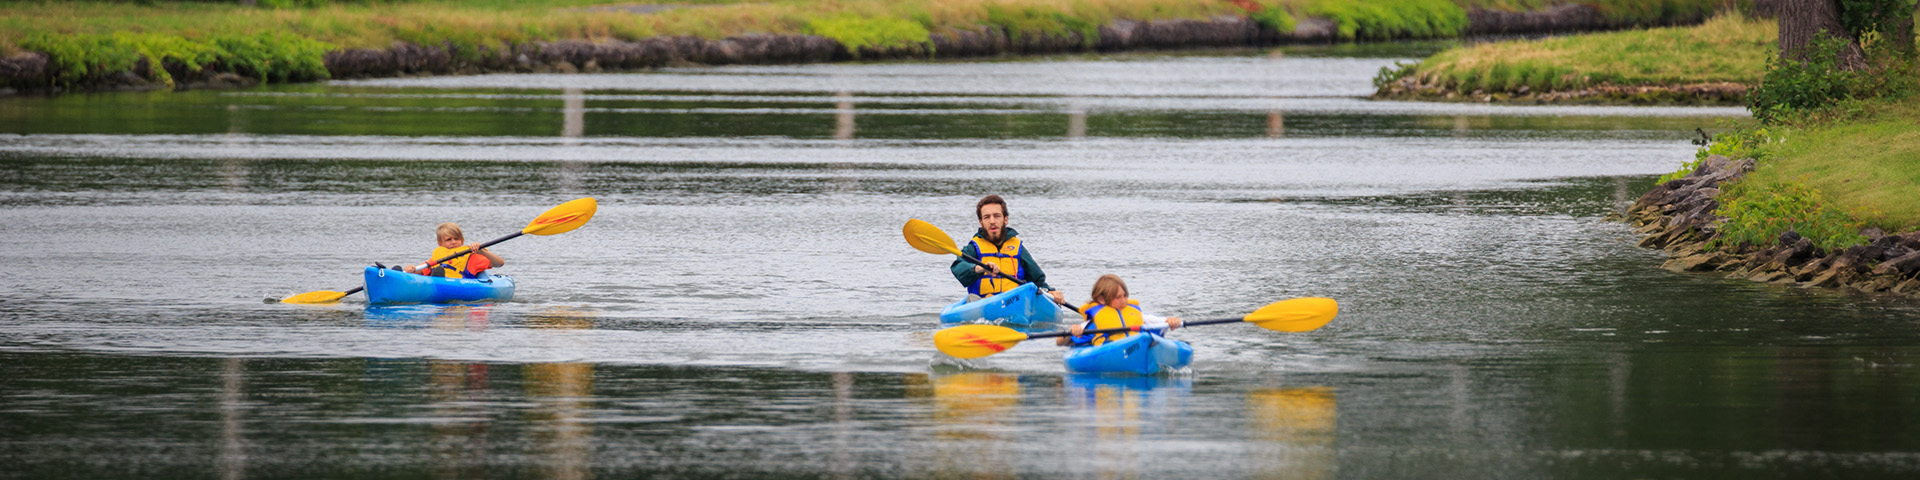 2 enfants et un employé de Parcs Canada en canot sur le canal.